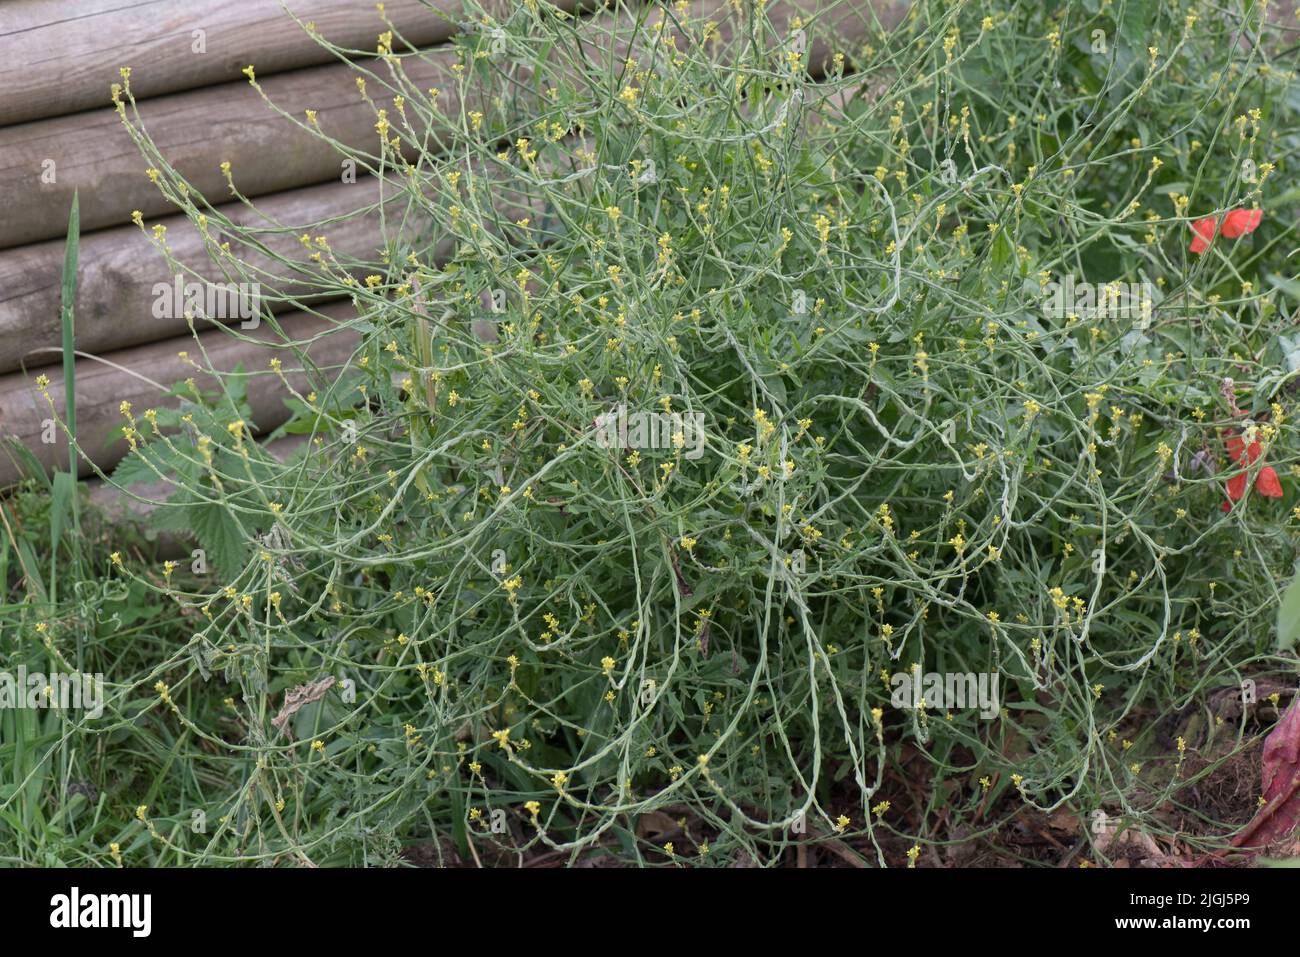 Eine Heckensenf-Pflanze (Sisymbrium officinale) mit kleinen gelben Blüten auf dem Abfallboden, in der Region von berkshire, Juli Stockfoto